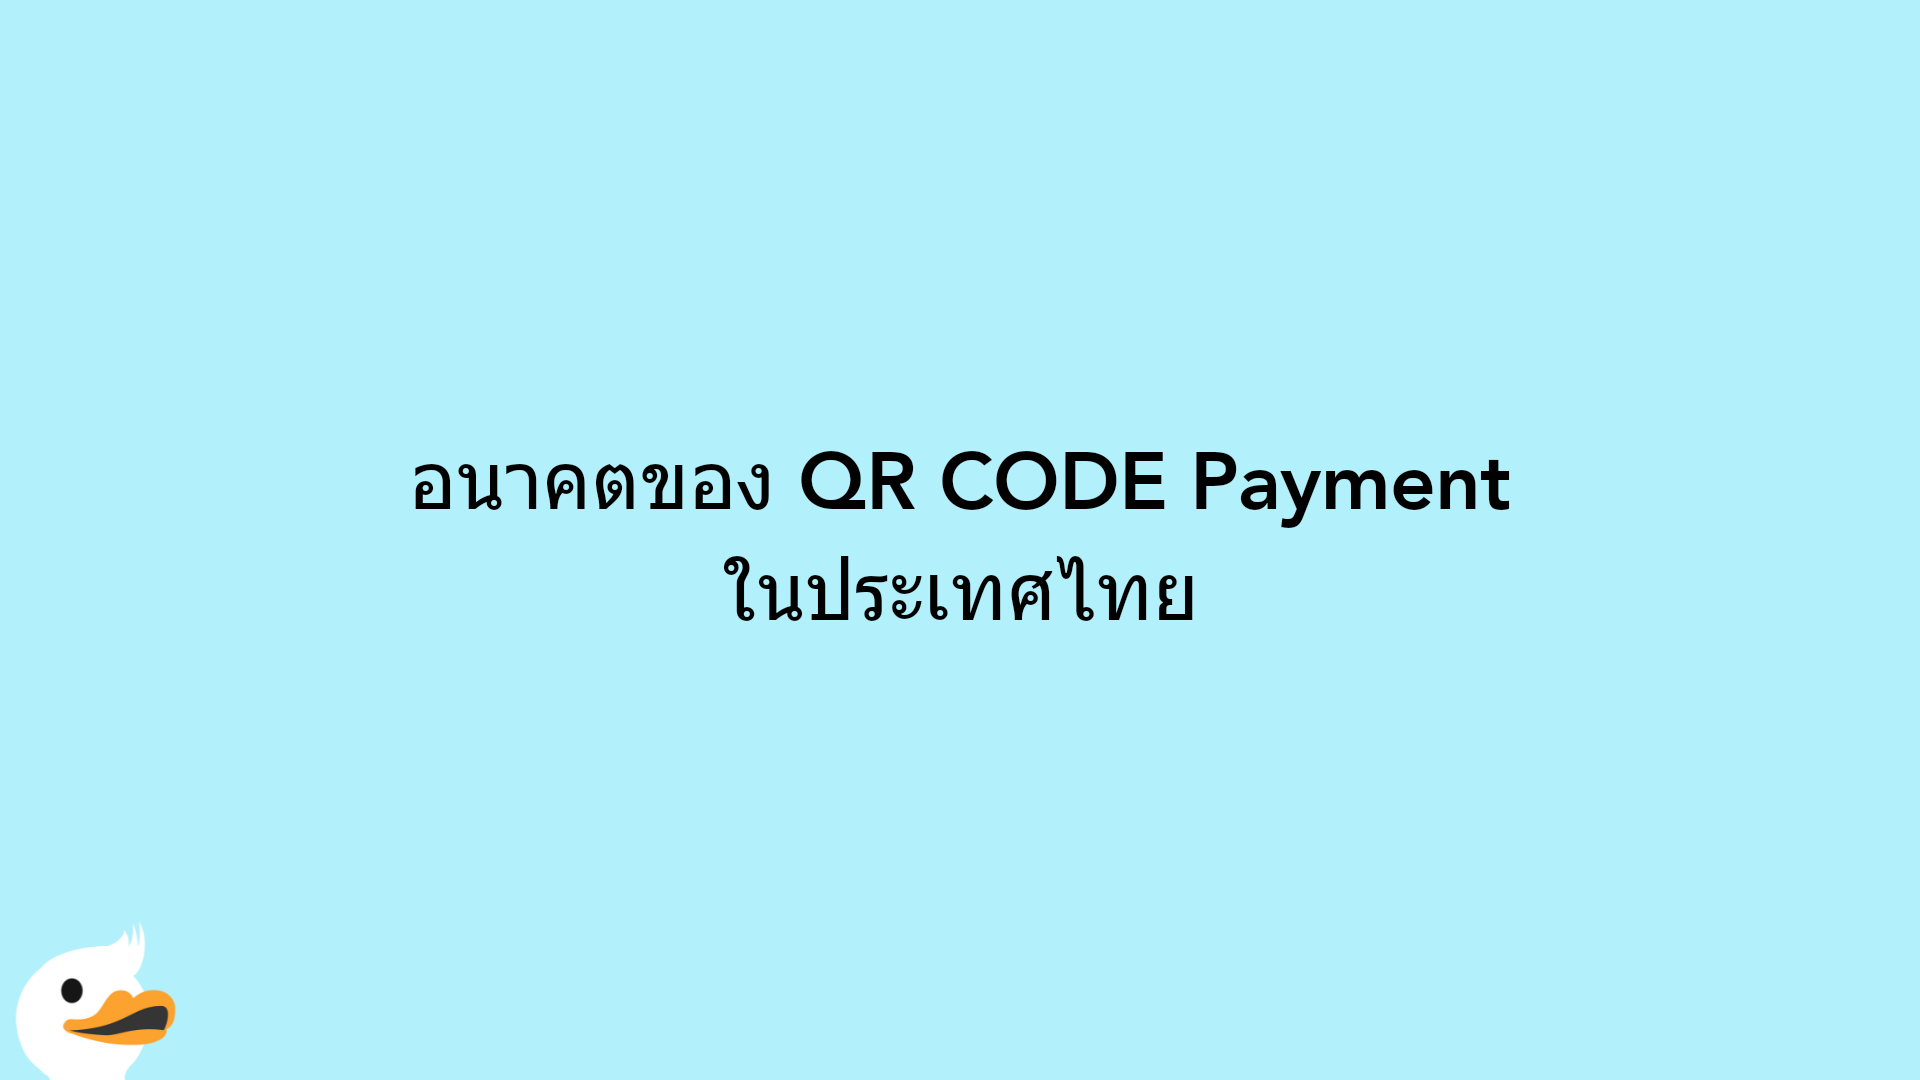 อนาคตของ QR CODE Payment ในประเทศไทย